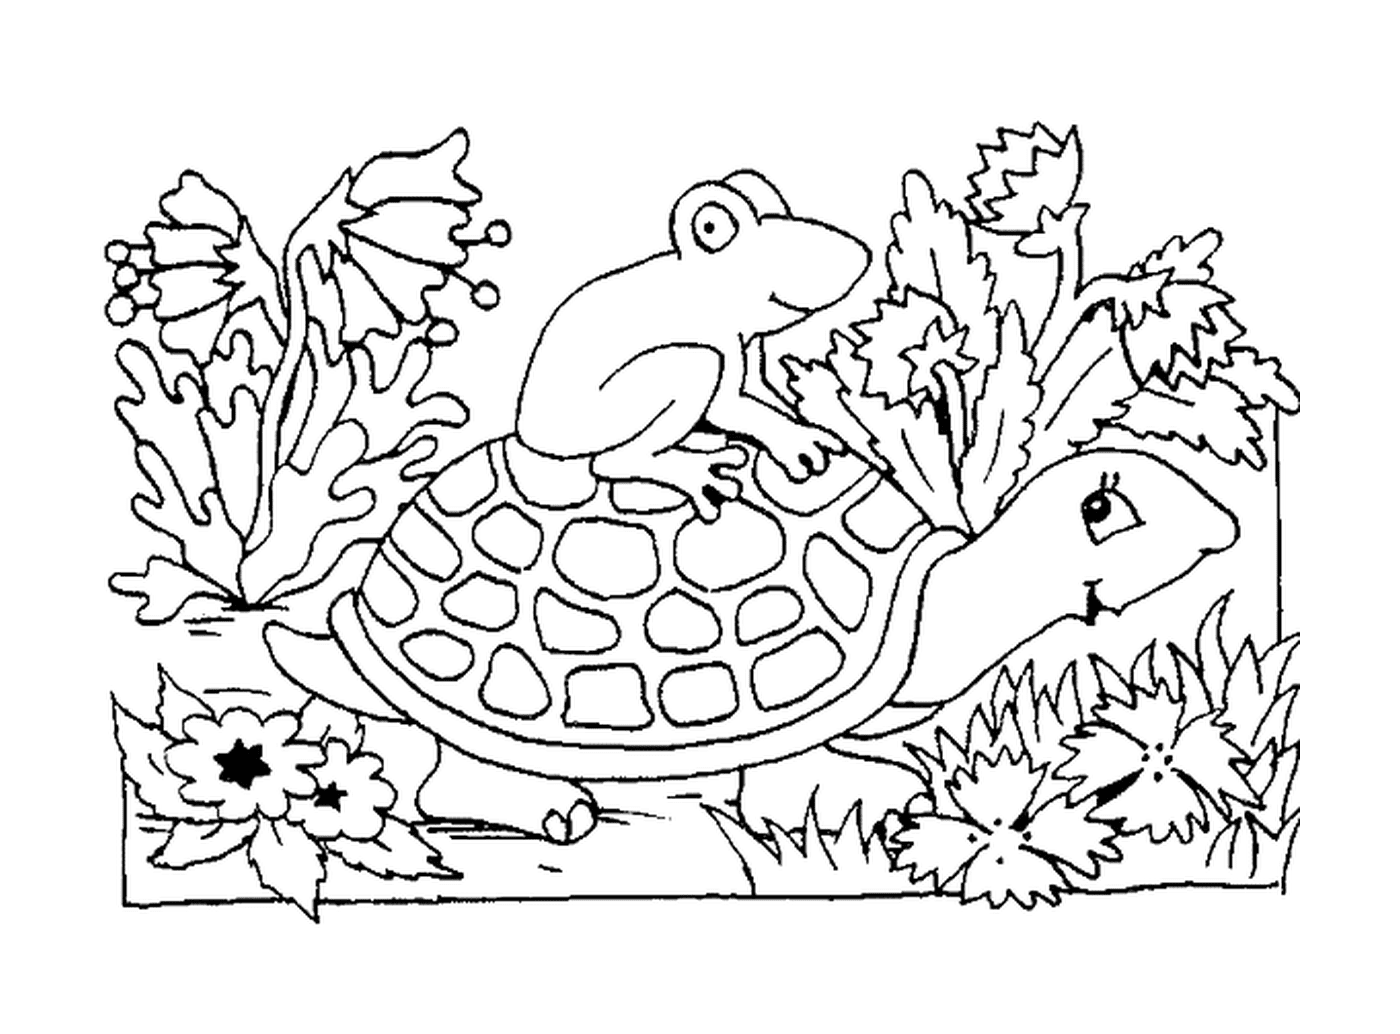  一只青蛙坐在海龟壳上 